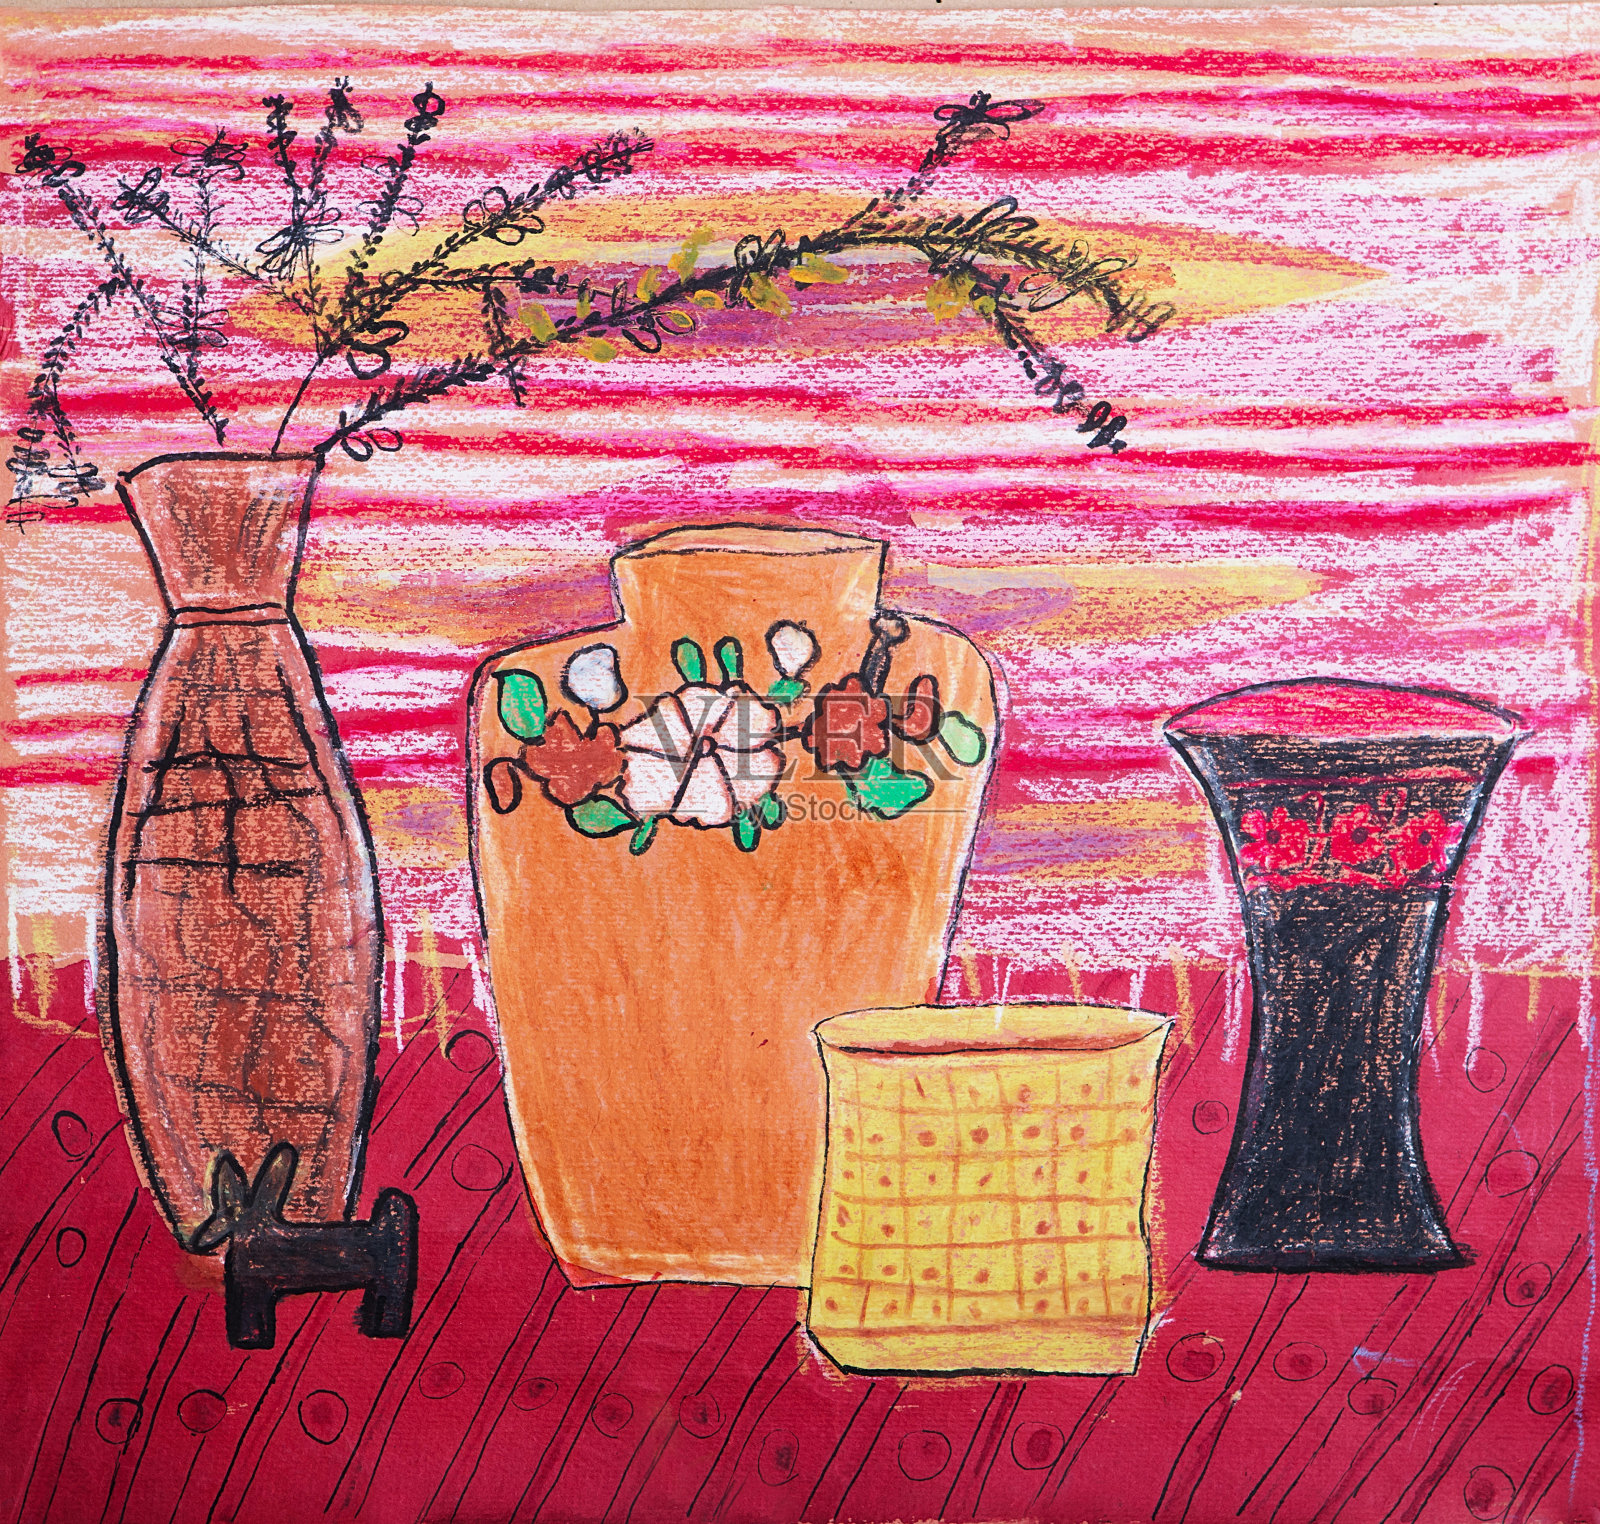 篮子，花瓶，水果和干花的静物构图插图。印象派,孩子们的创造力插画图片素材